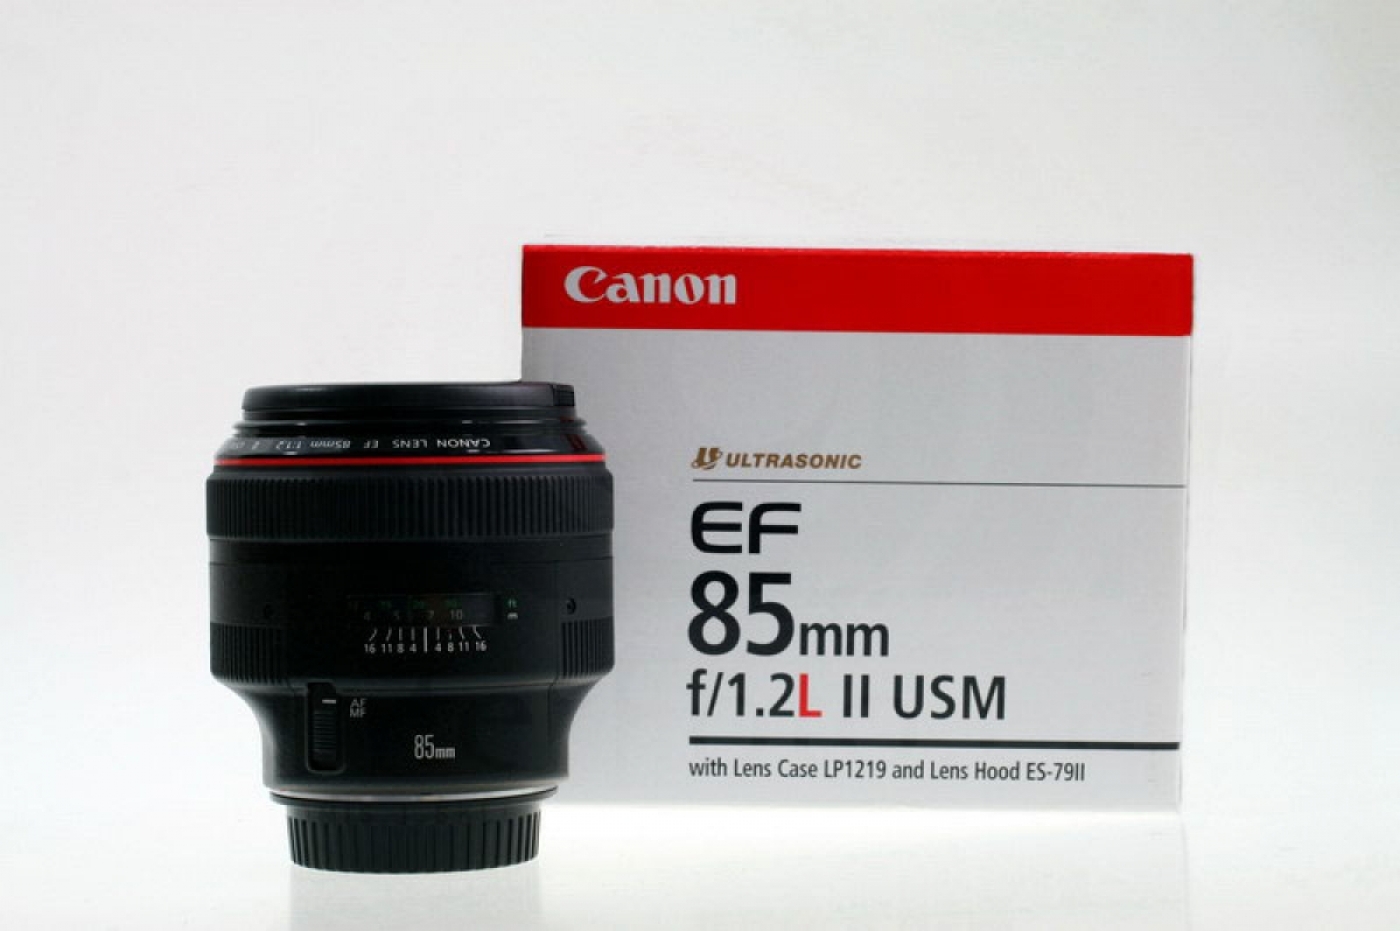 15493Obiektywy 85mm i Nikon Z f Canon EF 85mm F1.2L USM II